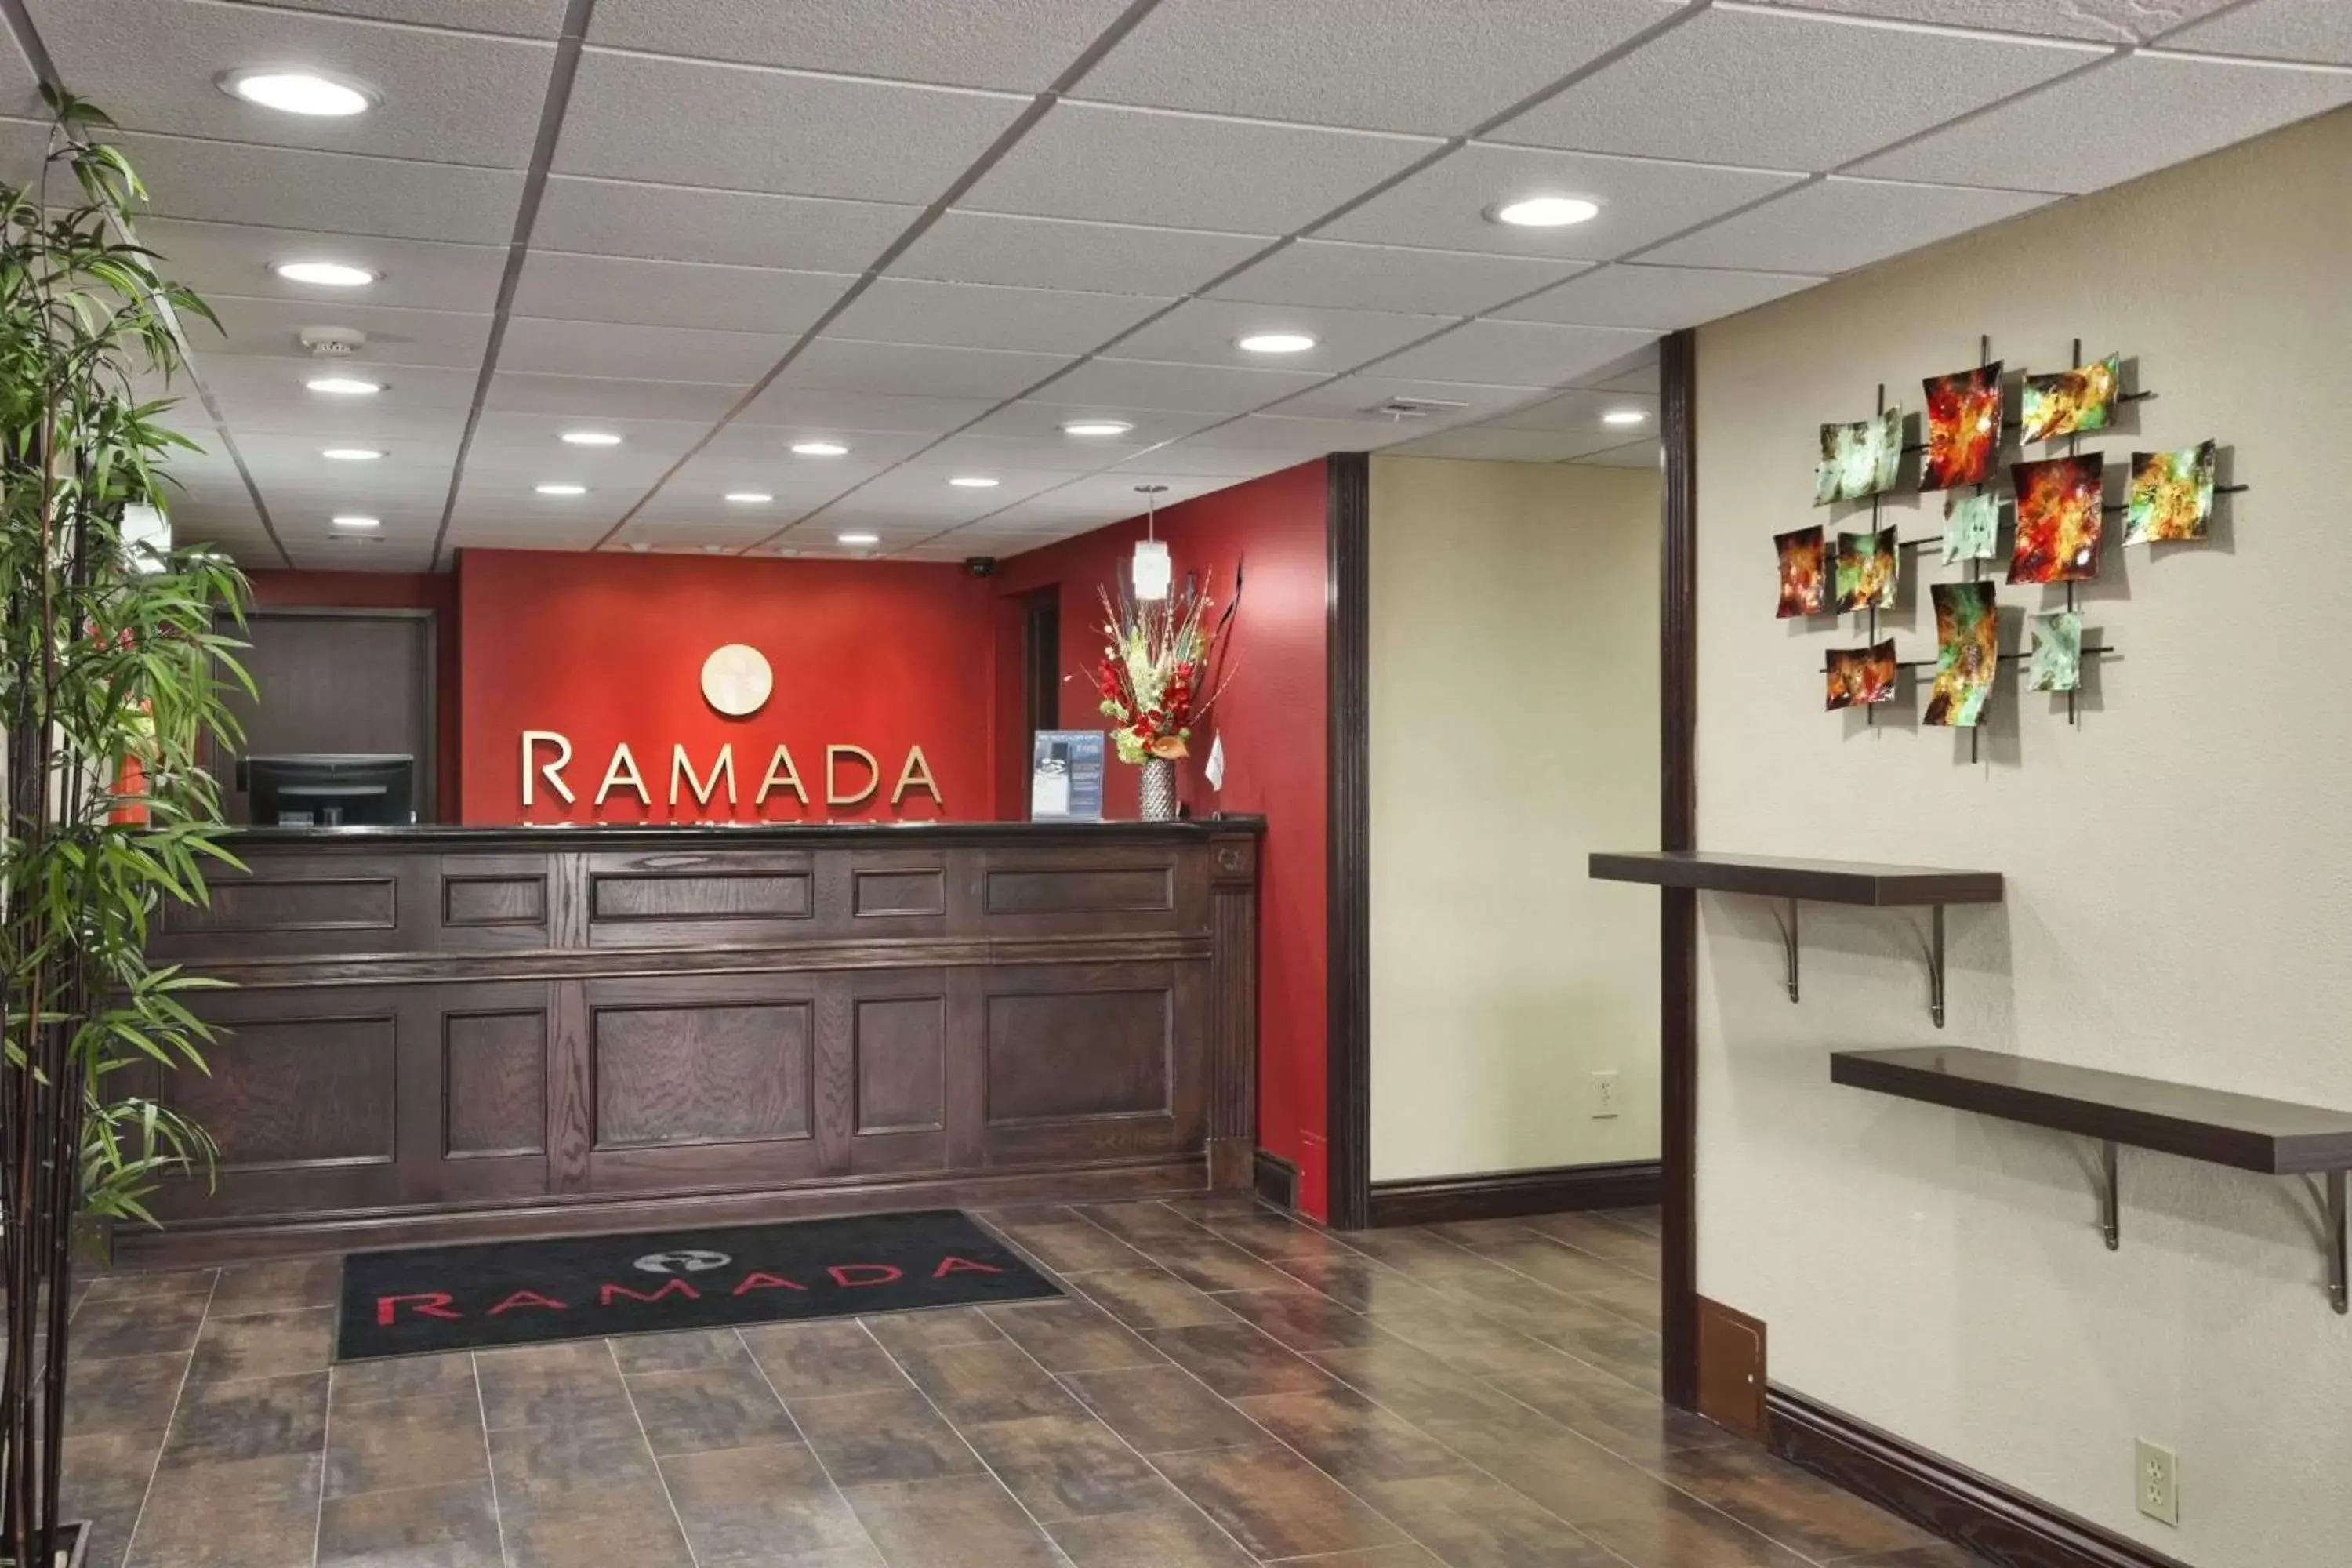 Lobby or reception, Lobby/Reception in Ramada by Wyndham Tulsa